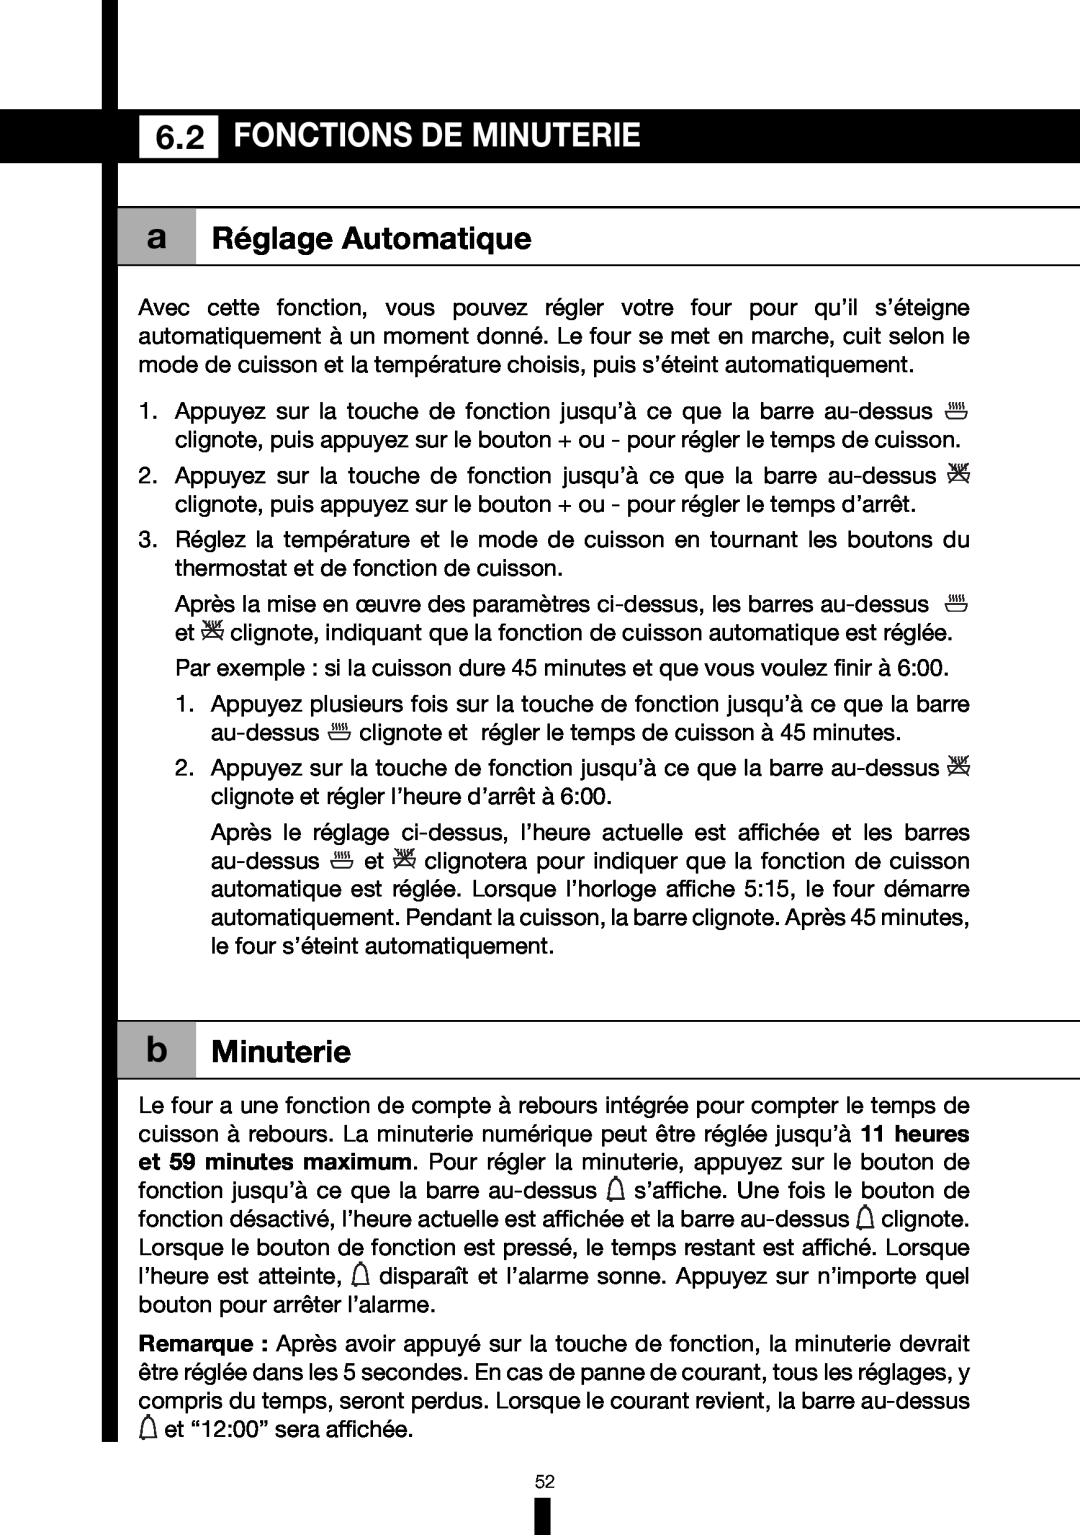 Fagor America 6HA-196BX manual Fonctions De Minuterie, a Réglage Automatique, b Minuterie 